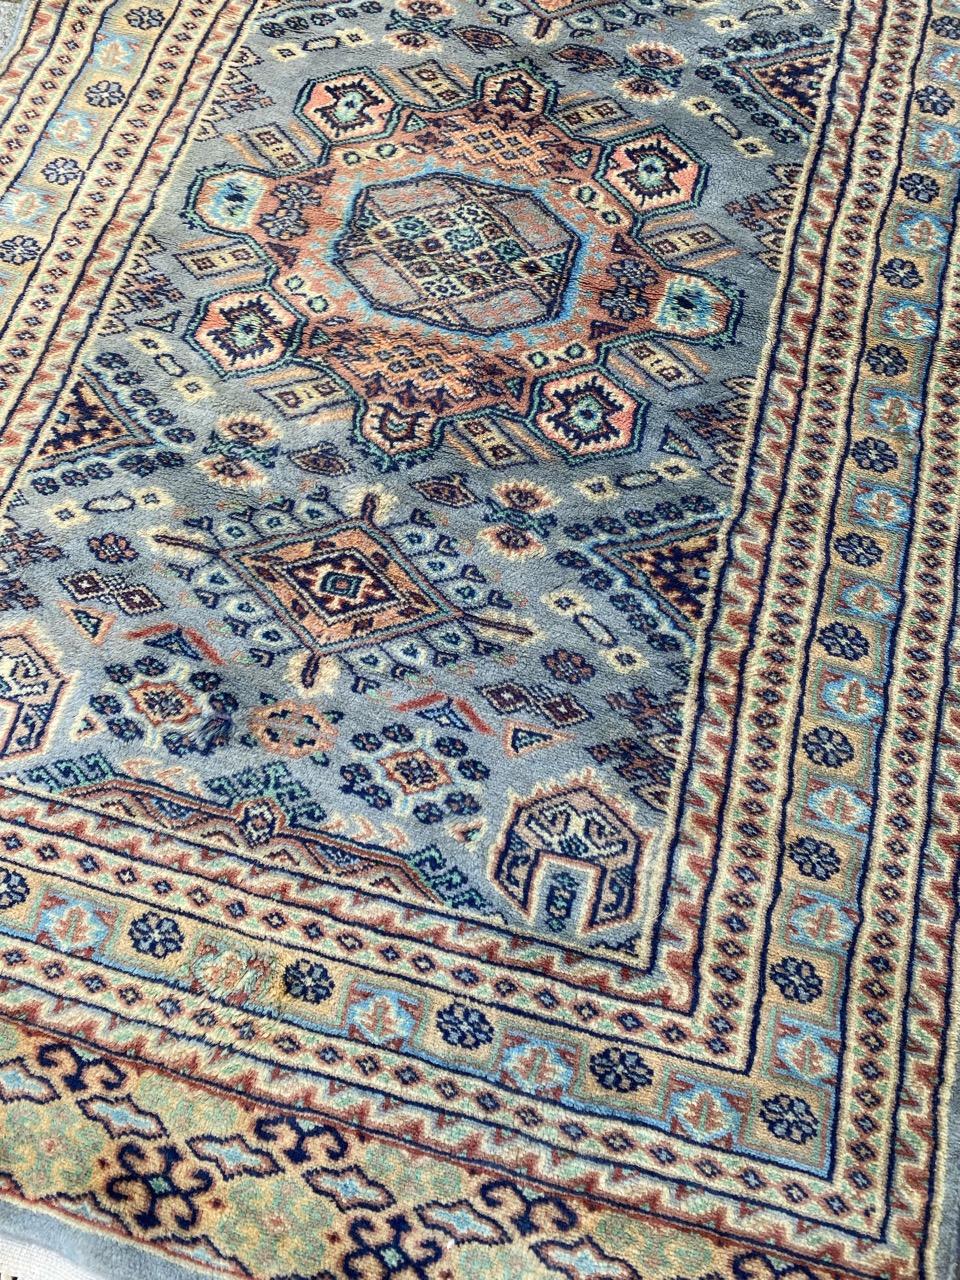 Joli tapis du milieu du siècle avec un beau design géométrique et de belles couleurs, entièrement noué à la main avec du velours de laine sur une base de coton.

✨✨✨
